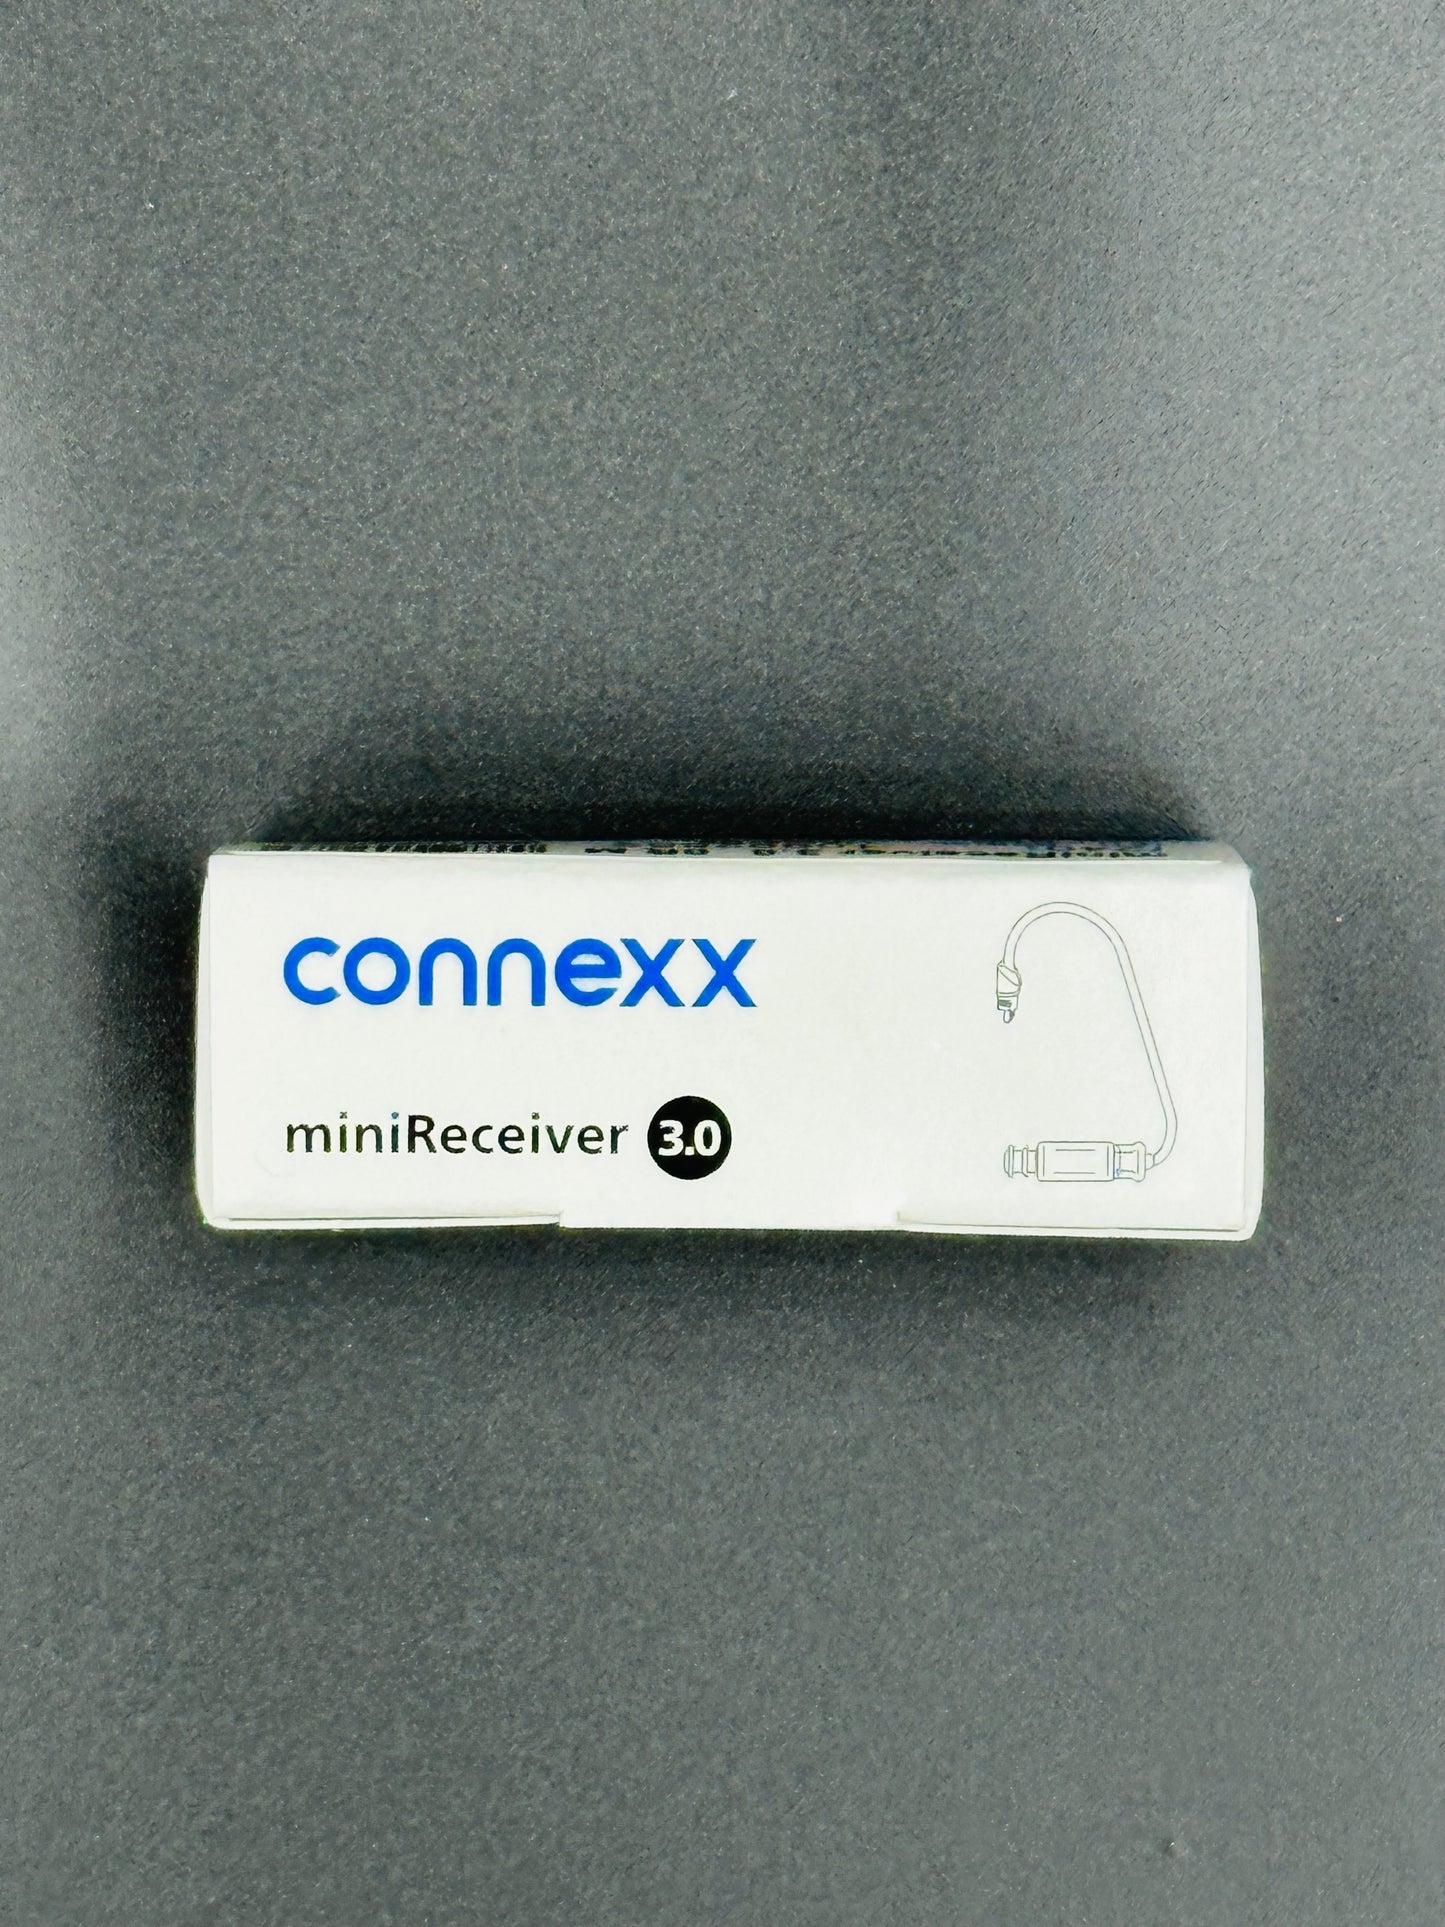 Mini Receiver 3.0 Standard 1, Right